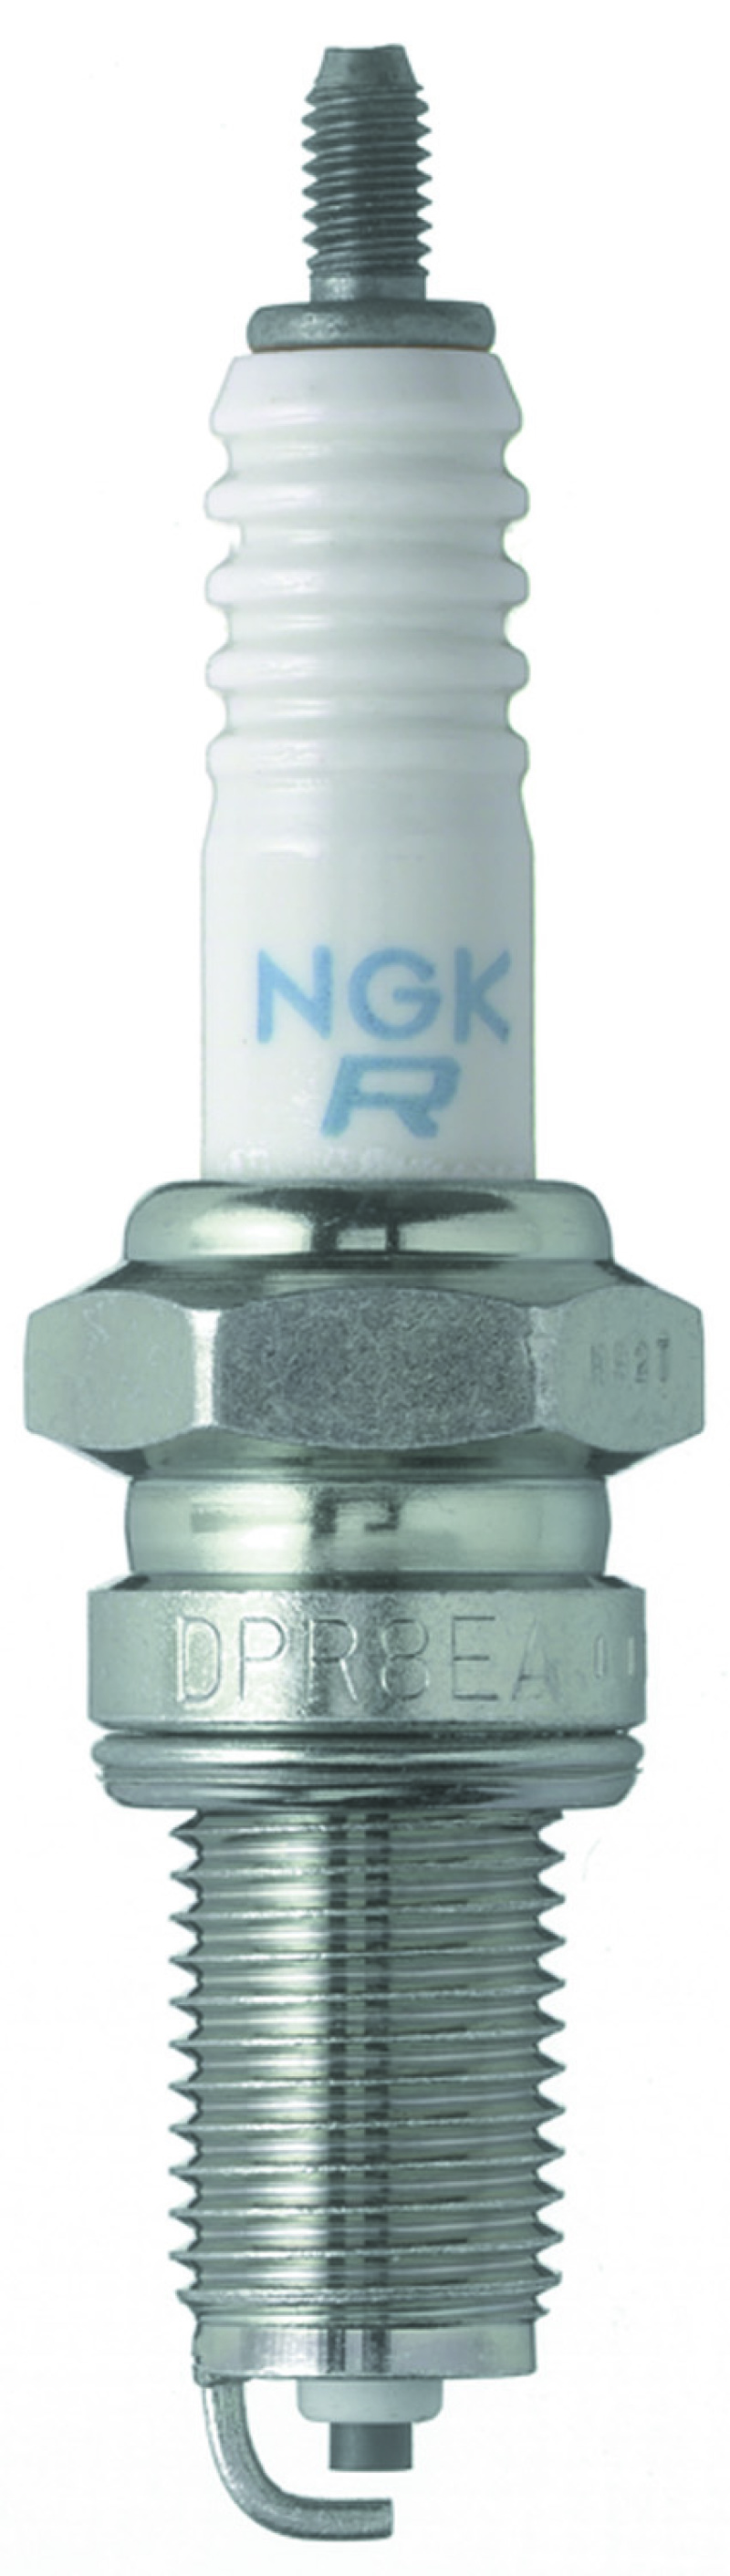 NGK Standard Spark Plug Box of 10 (DPR9EA-9) - 5329